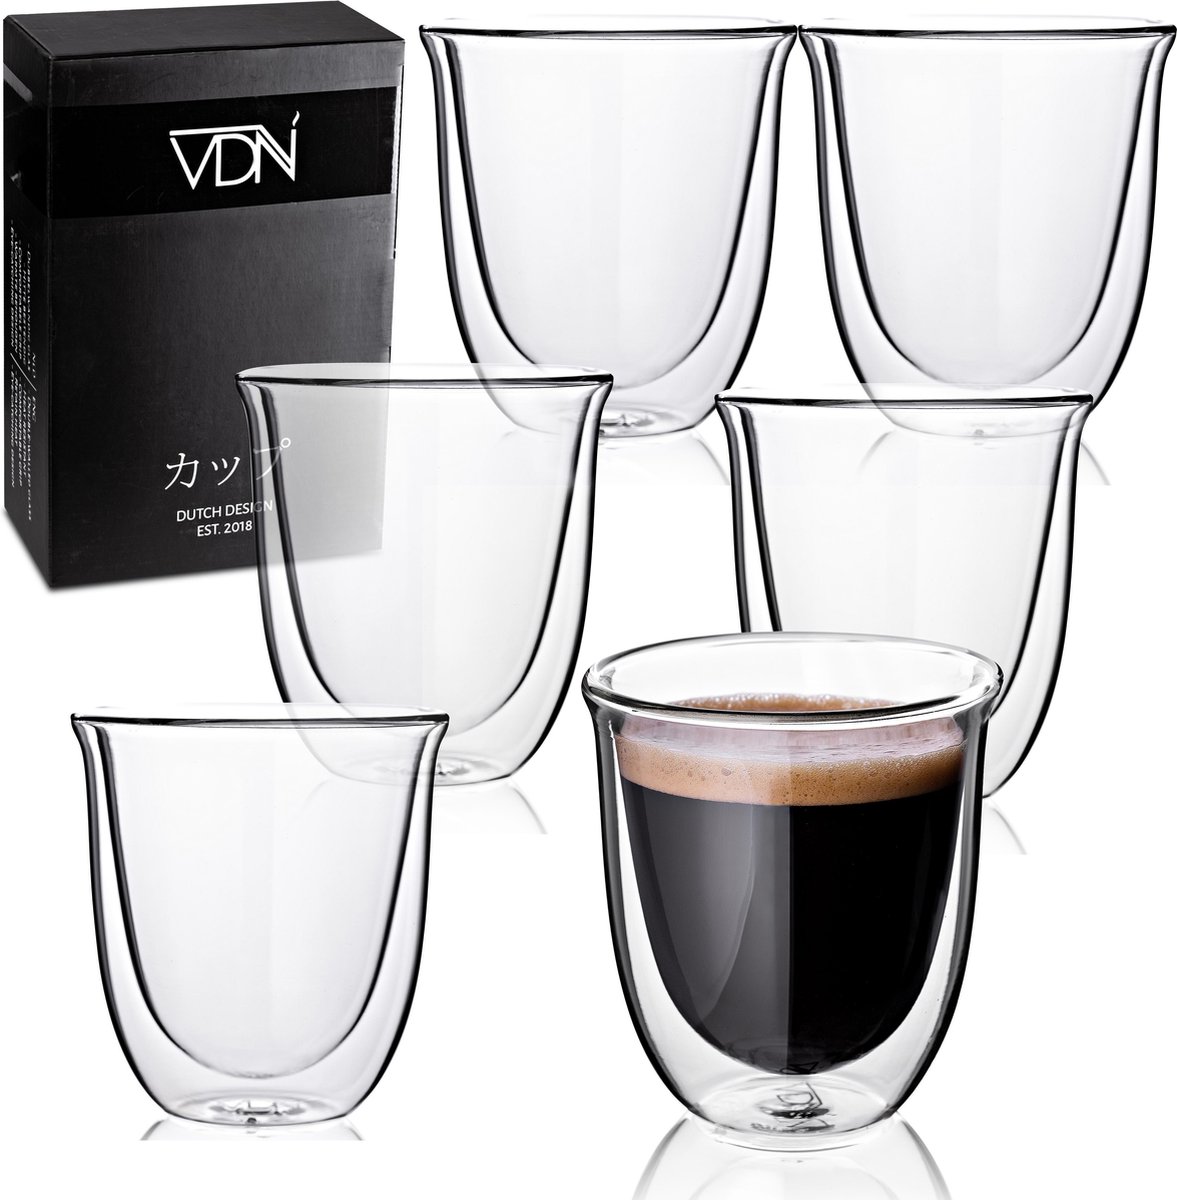 Dubbelwandige theeglazen koffieglazen - Cappuccino glazen - Warme en koude dranken koffietassen dubbelwandig - 250 ML - Set van 6 - VDN